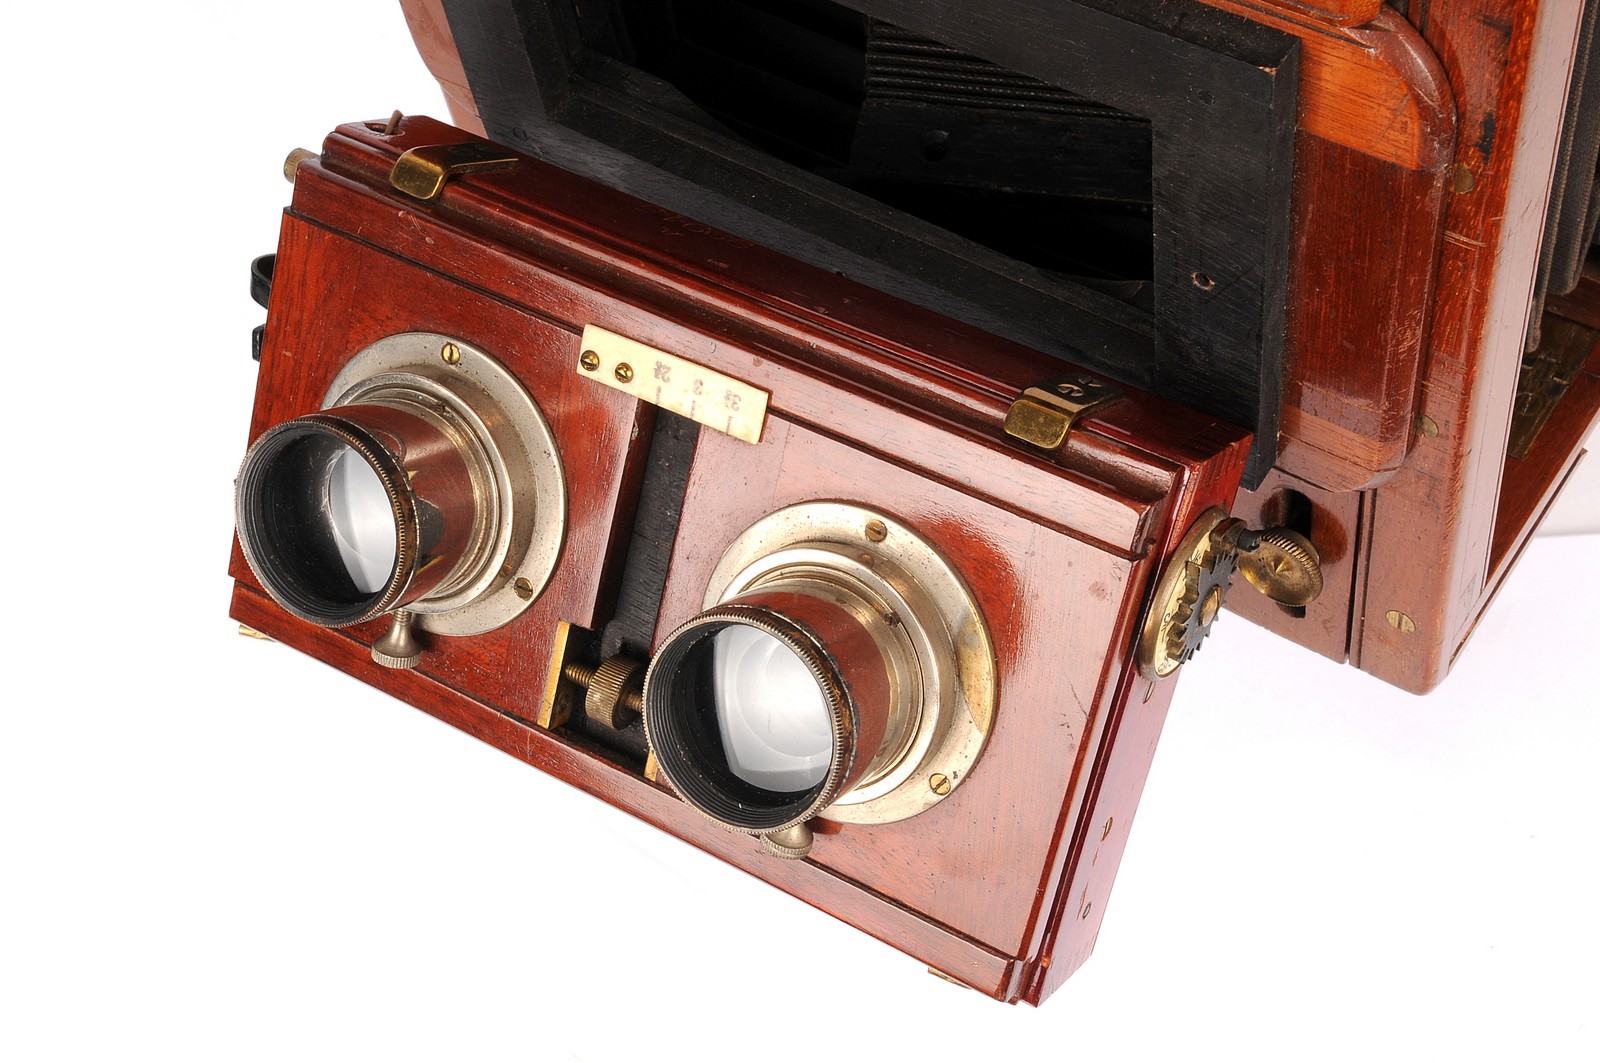 The Standard Stereoscopic Company Mahogany Stereo Tailboard Camera, 4½x6¼, with unmarked aluminium - Image 2 of 3